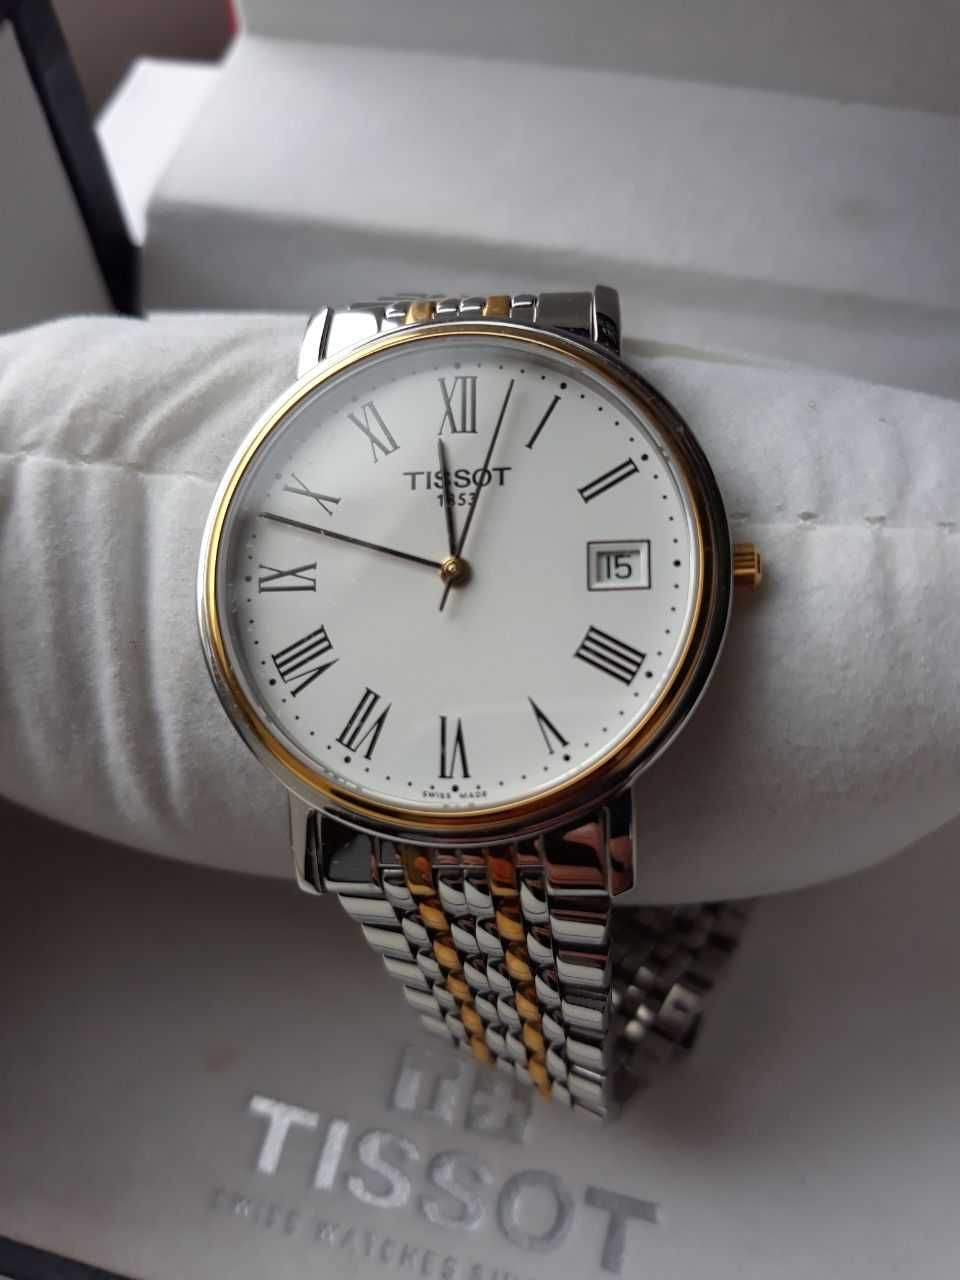 Мужские часы Tissot в оригинальной упаковке (не носились)